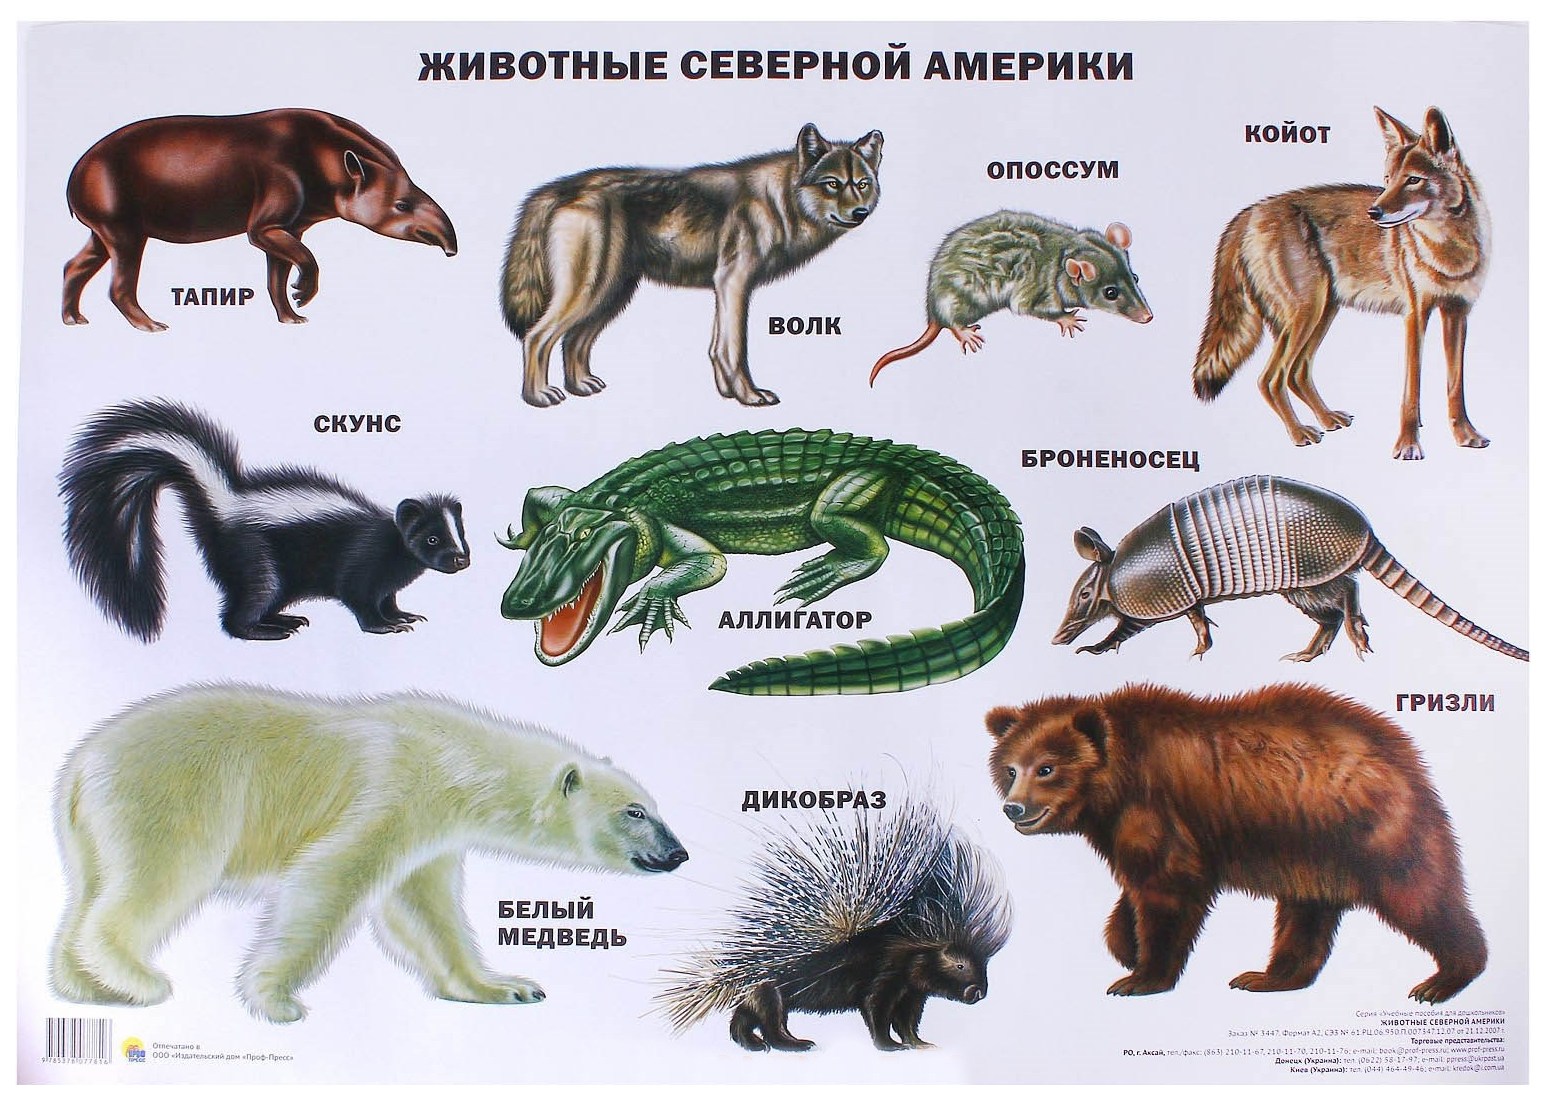 Какие звери находятся. Плакат животные Северной Америки 978-5-378-07781-6. Животные Северной Америки. Жичотныесеверной Америки.